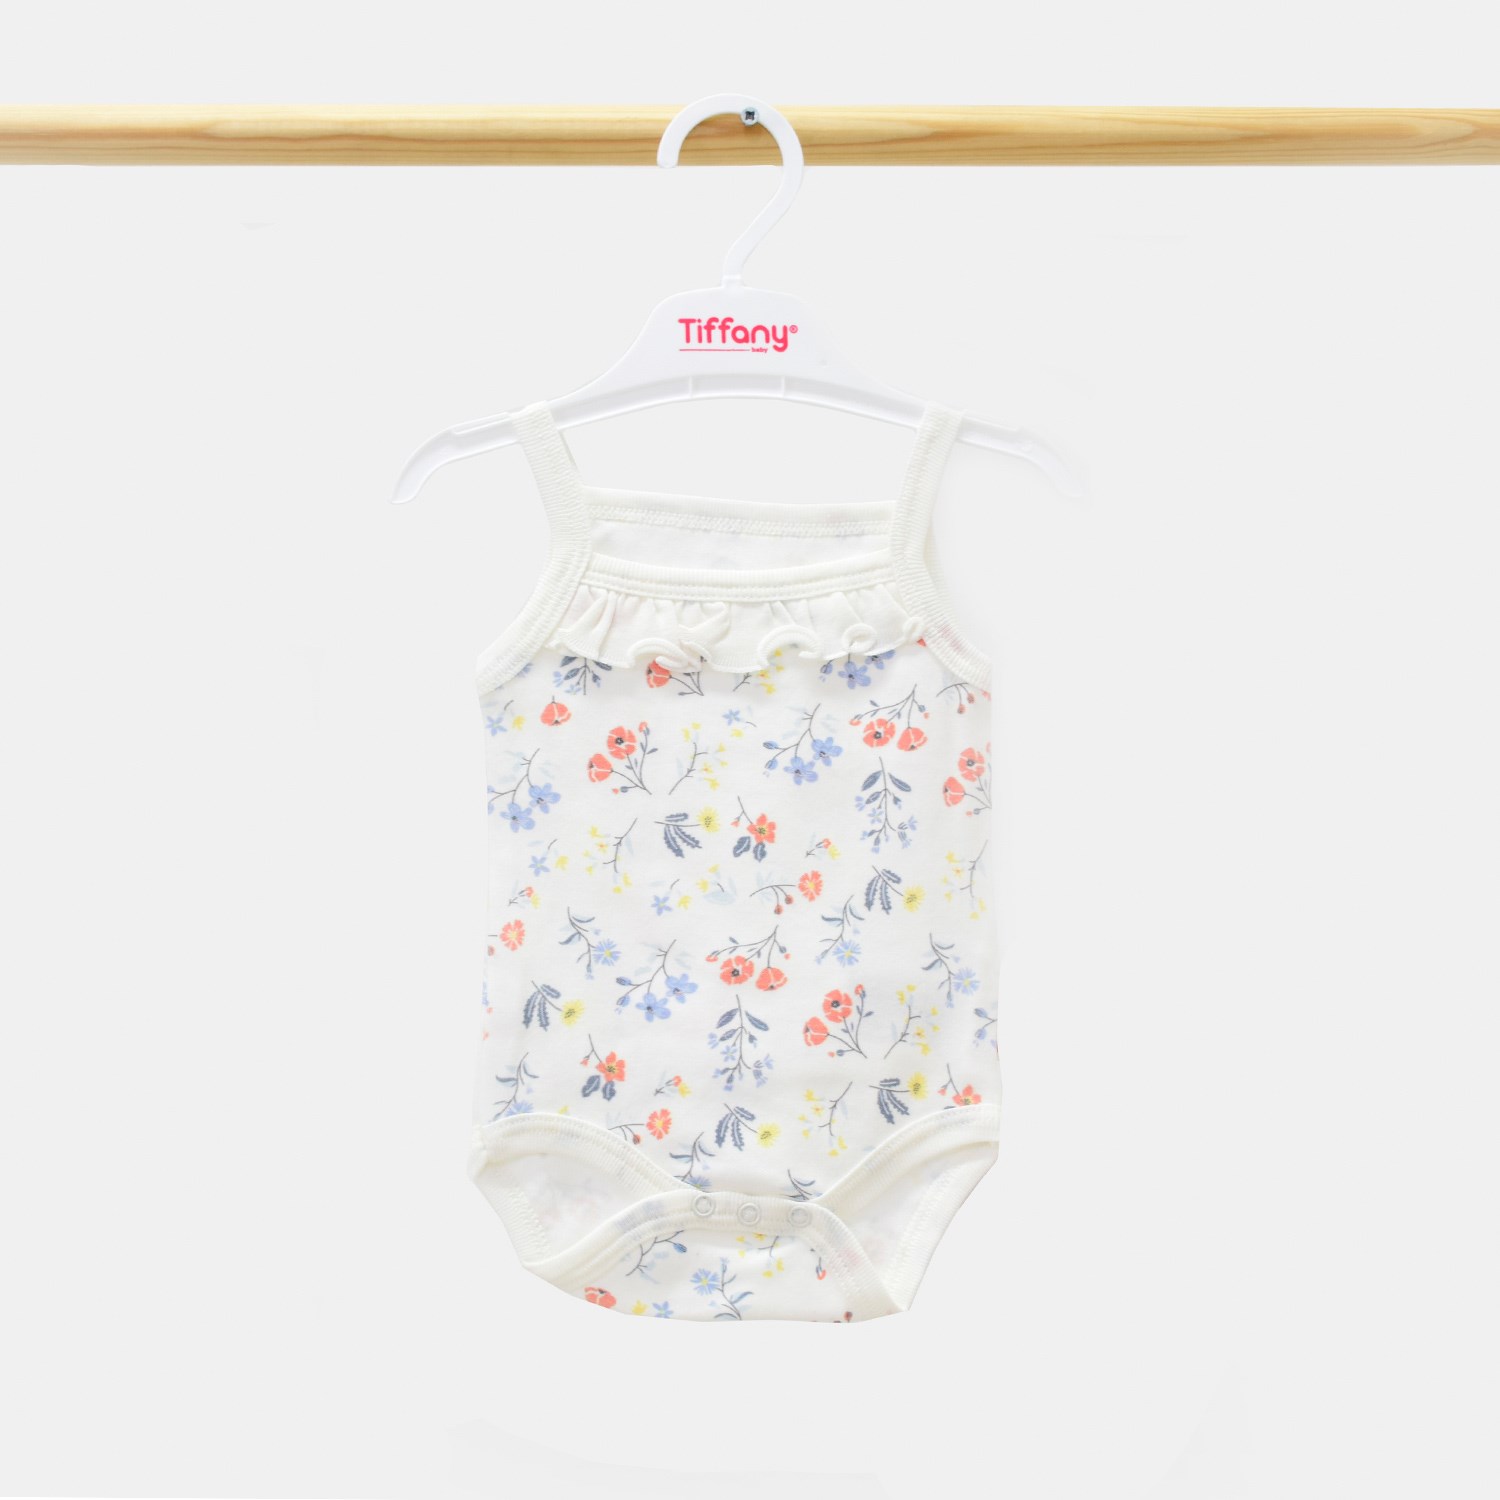 Tiffany Baby Sweat Theme İp Askılı Bebek Badi 11021 Kiremit